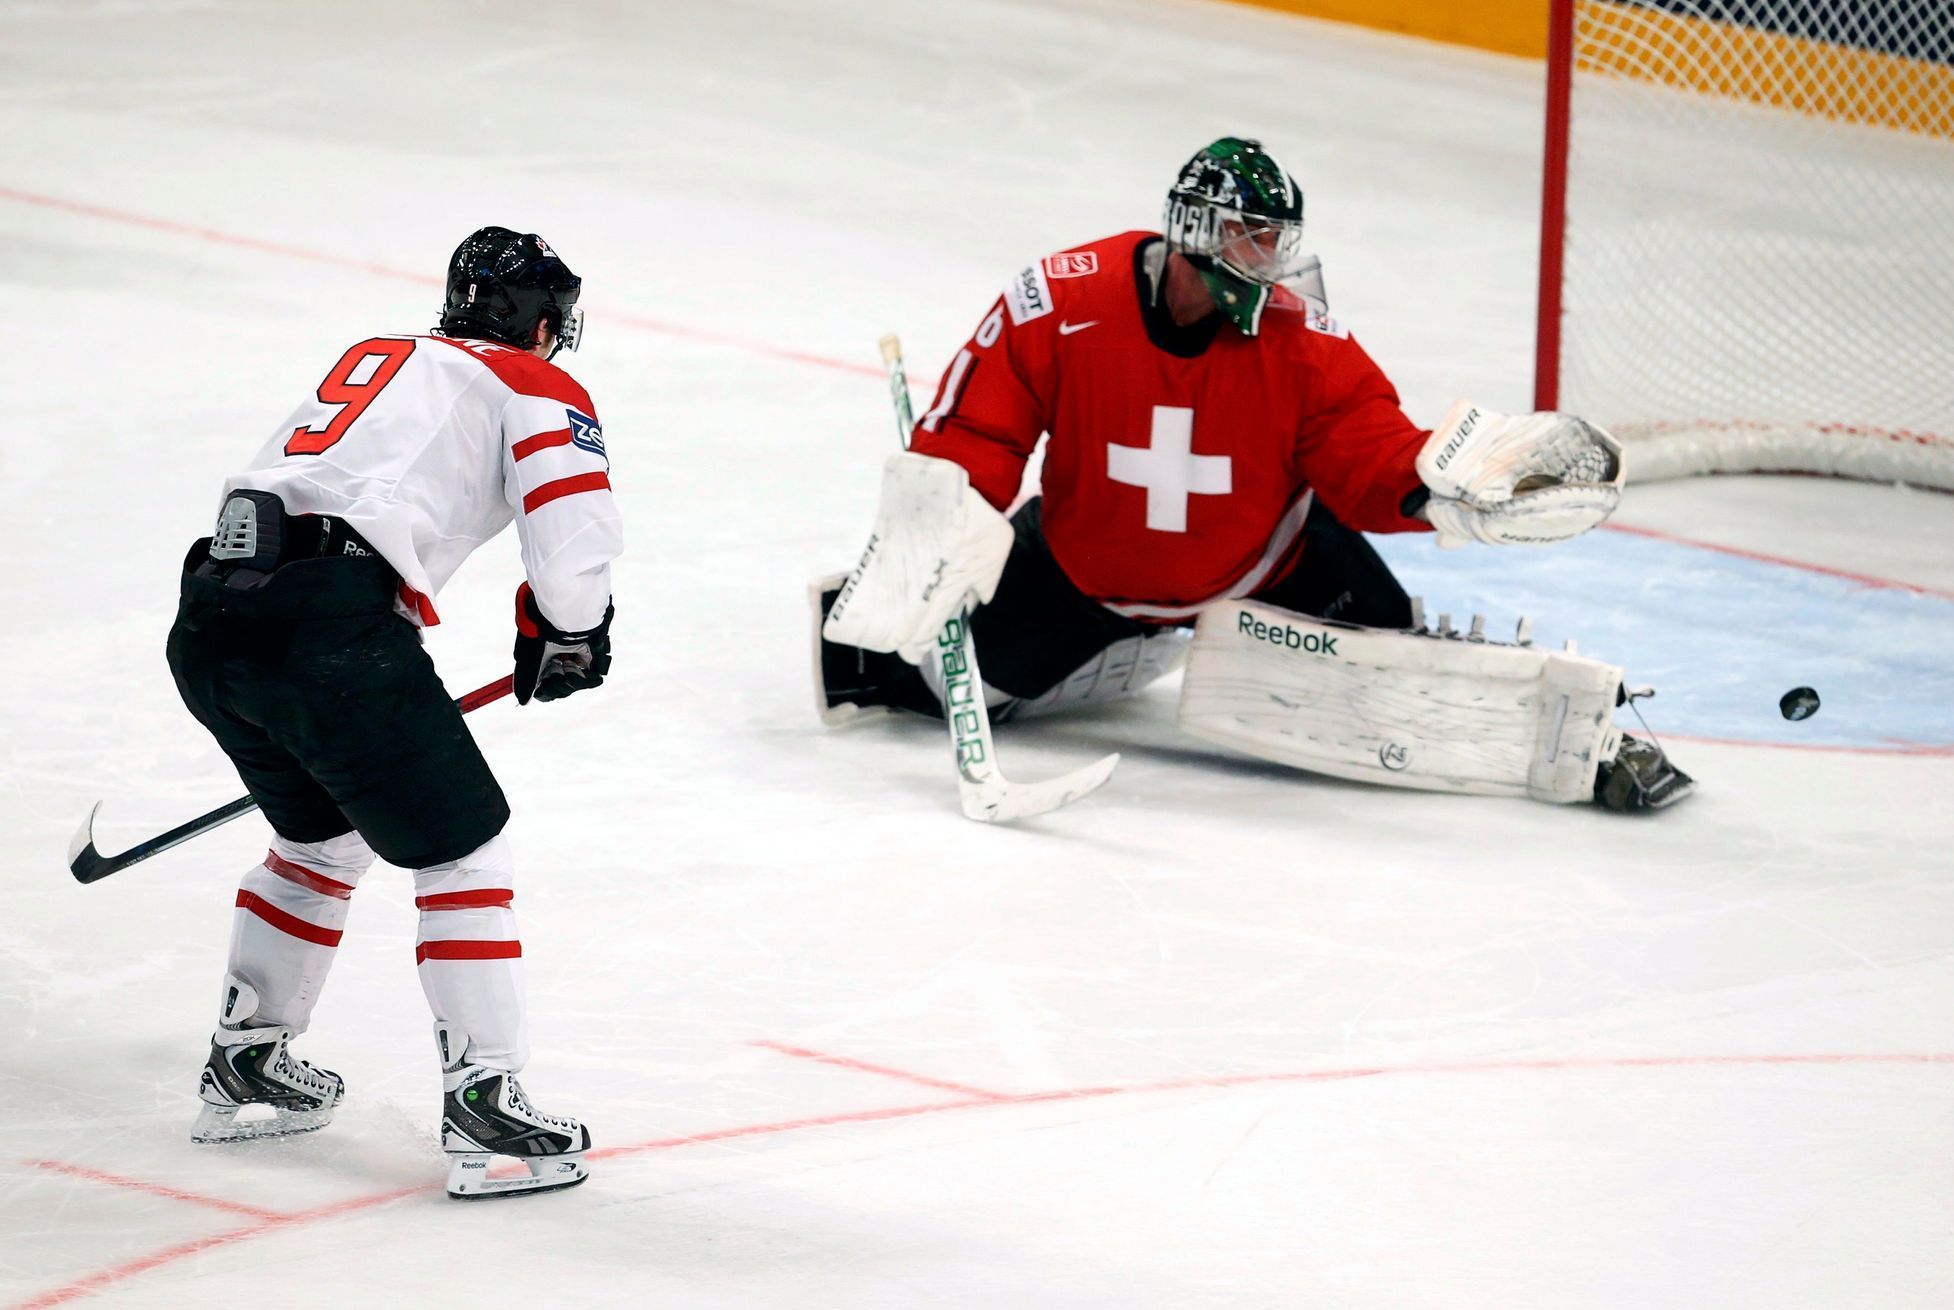 MS v hokeji 2013, Kanada - Švýcarsko: Matt Duchene - Martin Gerber, rozhodující neproměněný nájezd